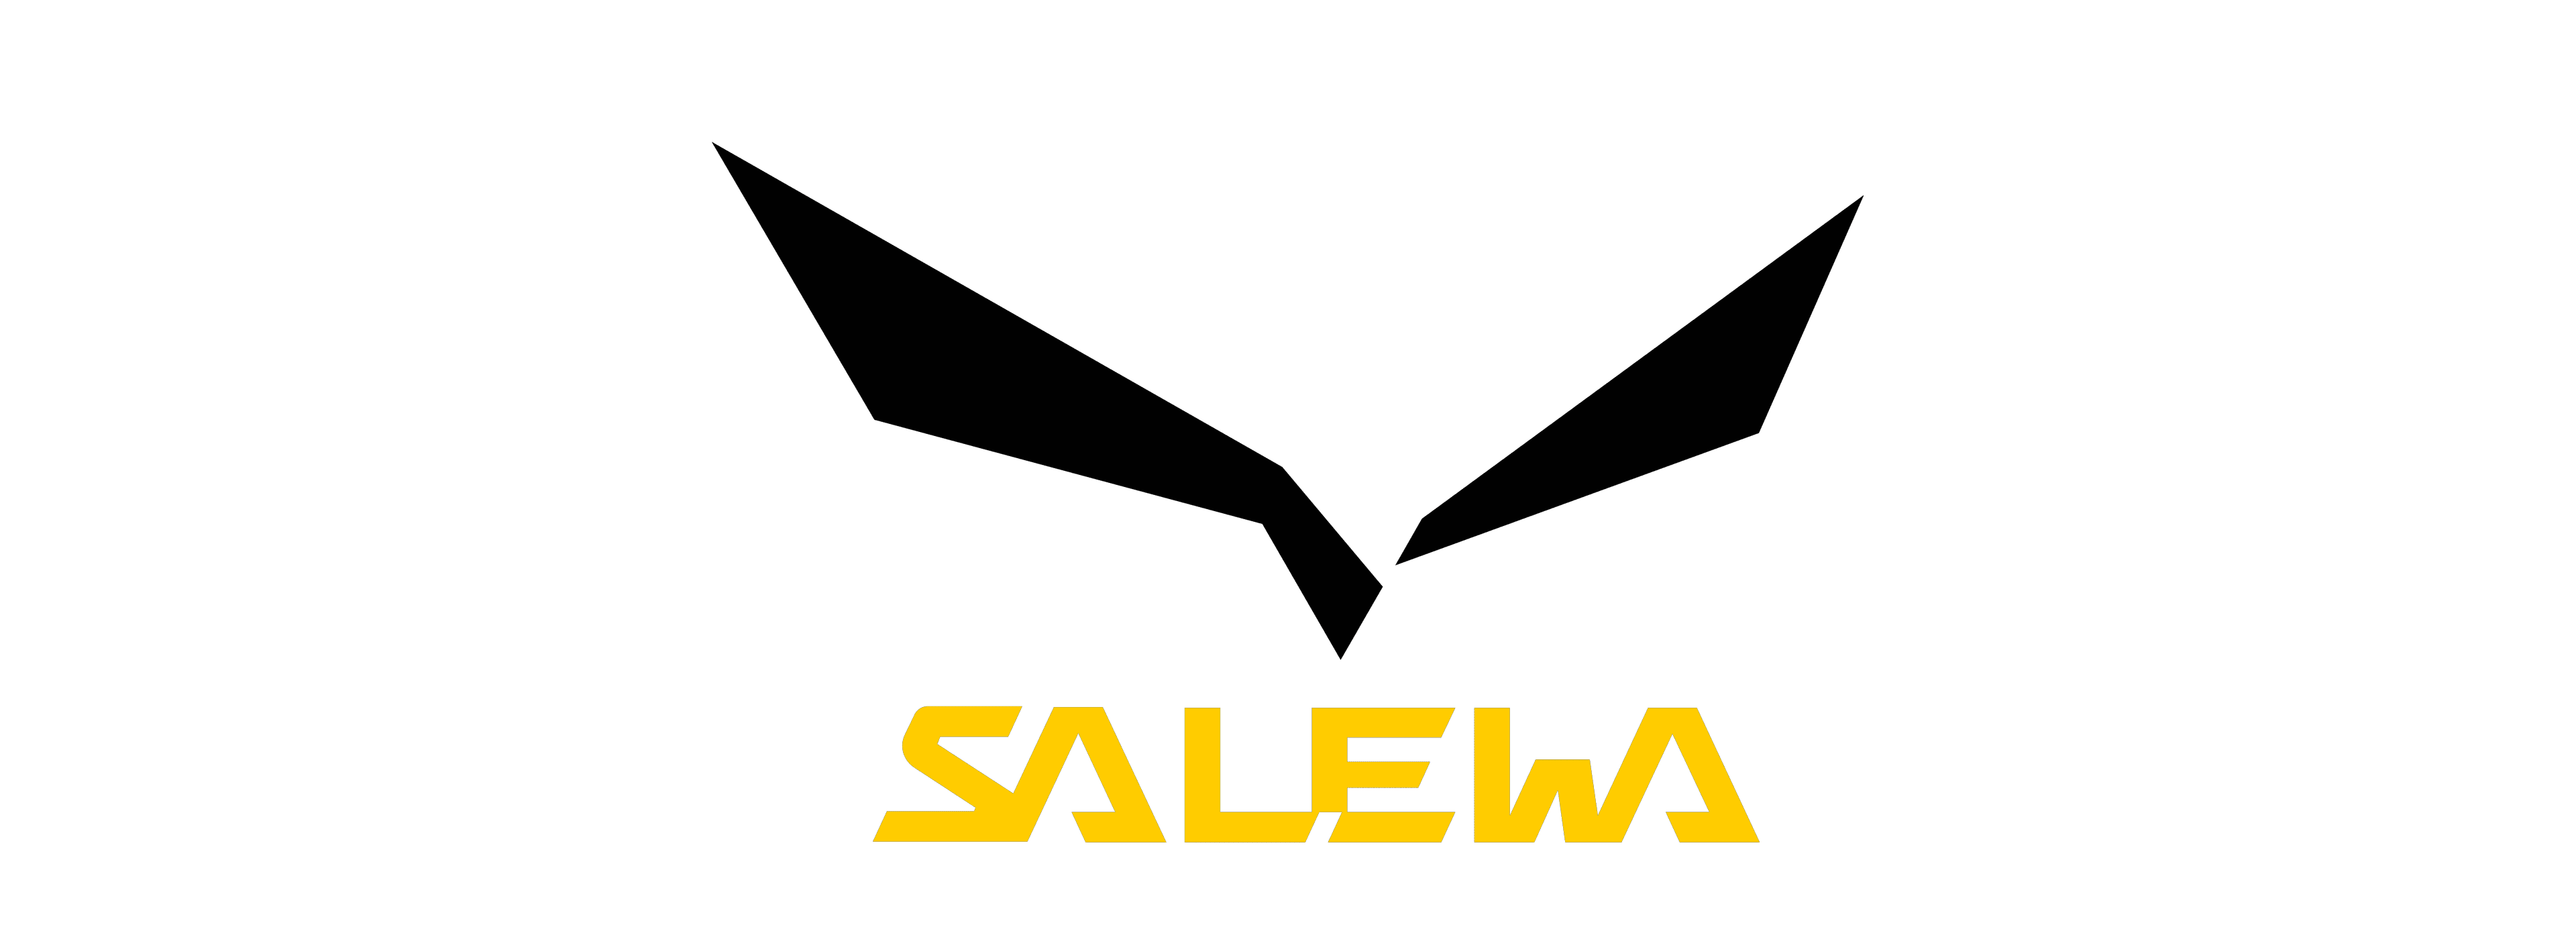 GetCashback.club - Salewa